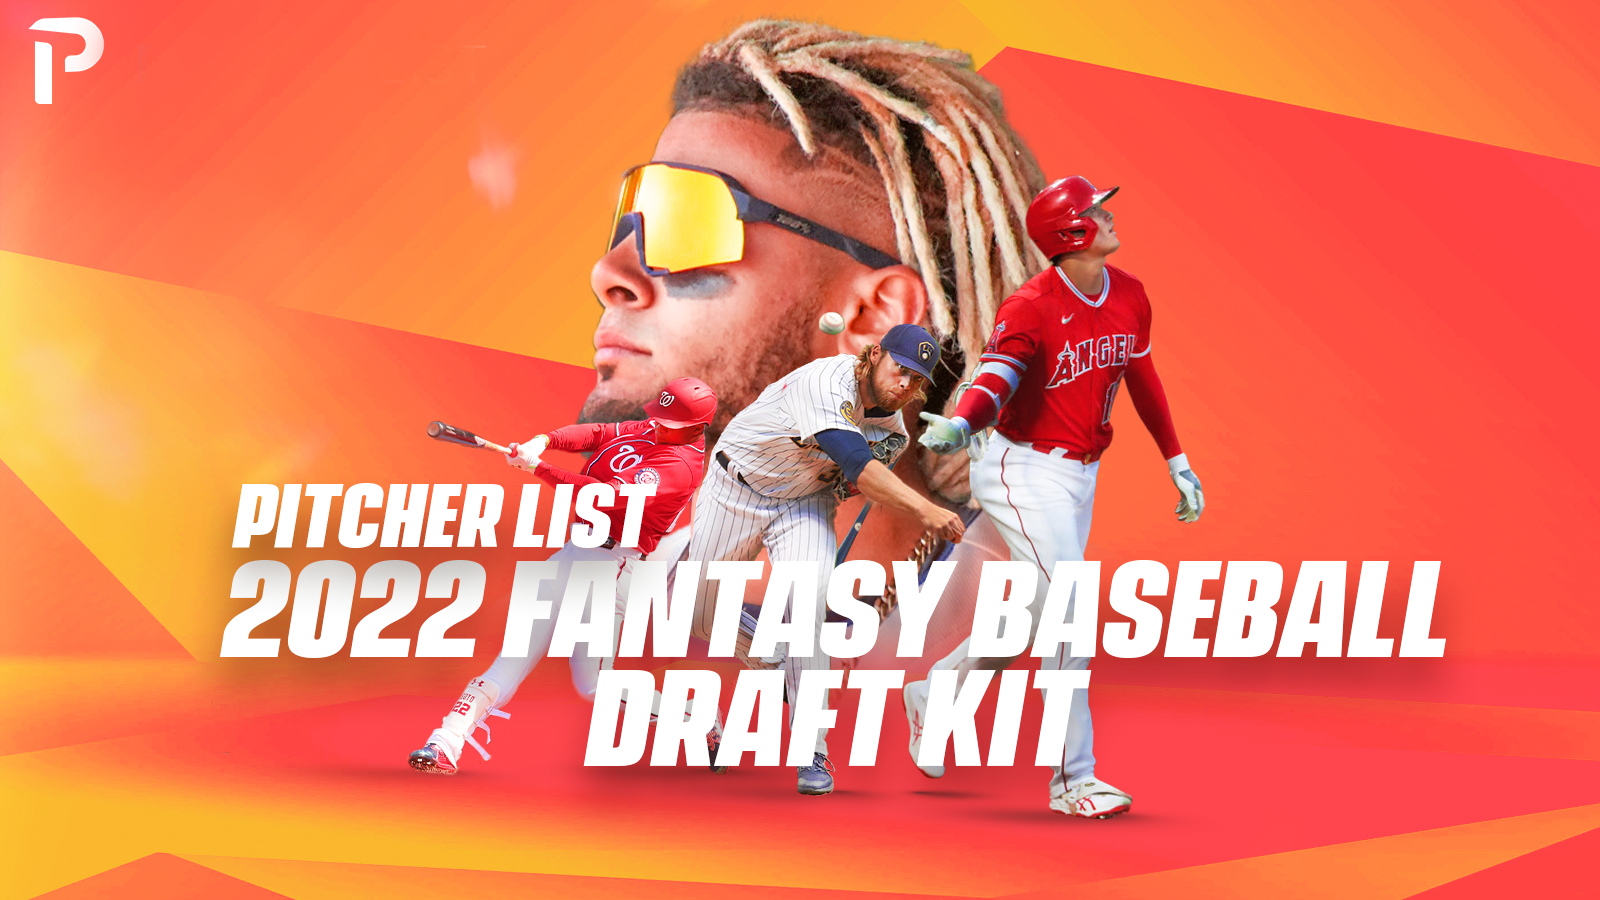 Pitcher List's 2022 Fantasy Baseball Draft Kit